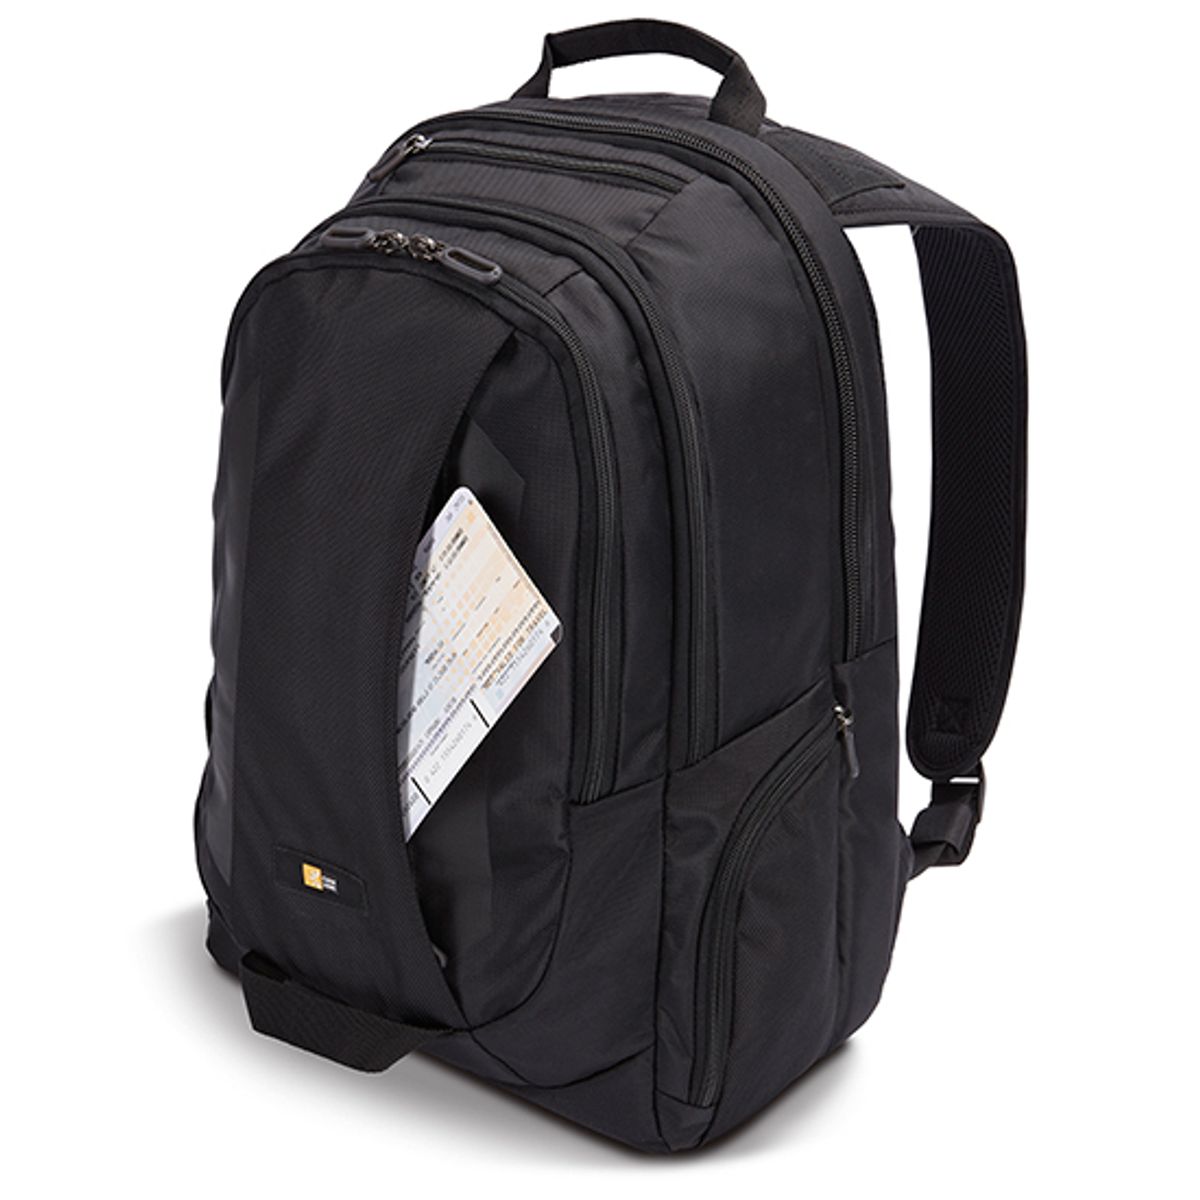 Case Logic Laptop Backpack 15.6" laptop backpack